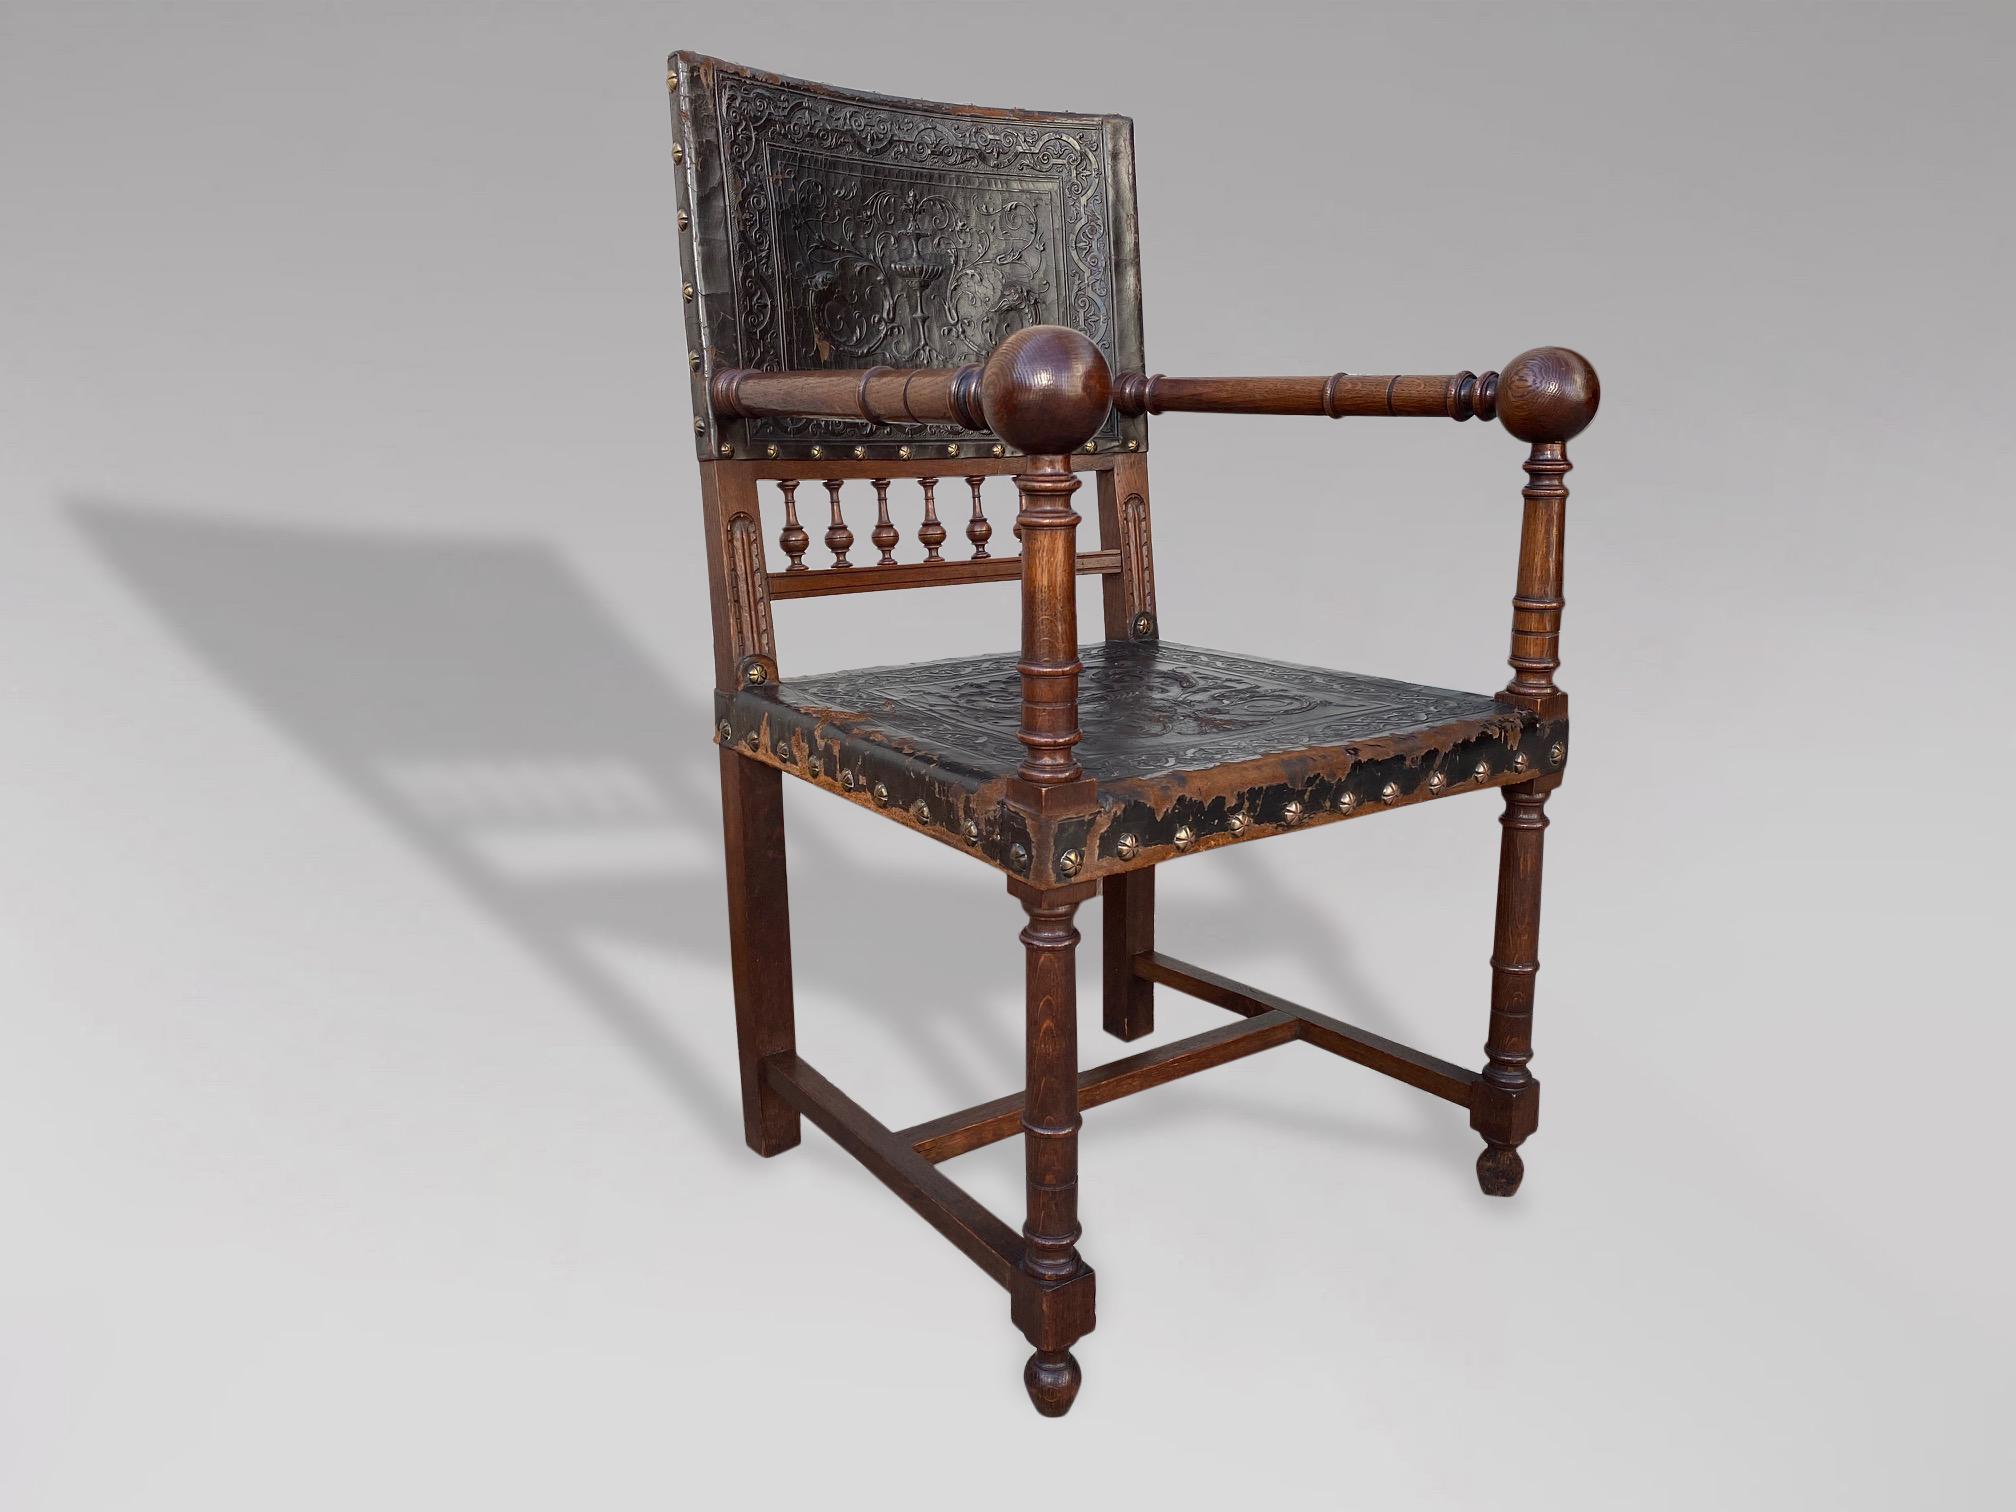 Très beau fauteuil ou fauteuil à bras en cuir et en chêne de la Renaissance française Henri II du 19e siècle, avec des cadres en chêne magnifiquement sculptés à la main et des clous en laiton façonnés. Les pieds droits tournés sont reliés par un